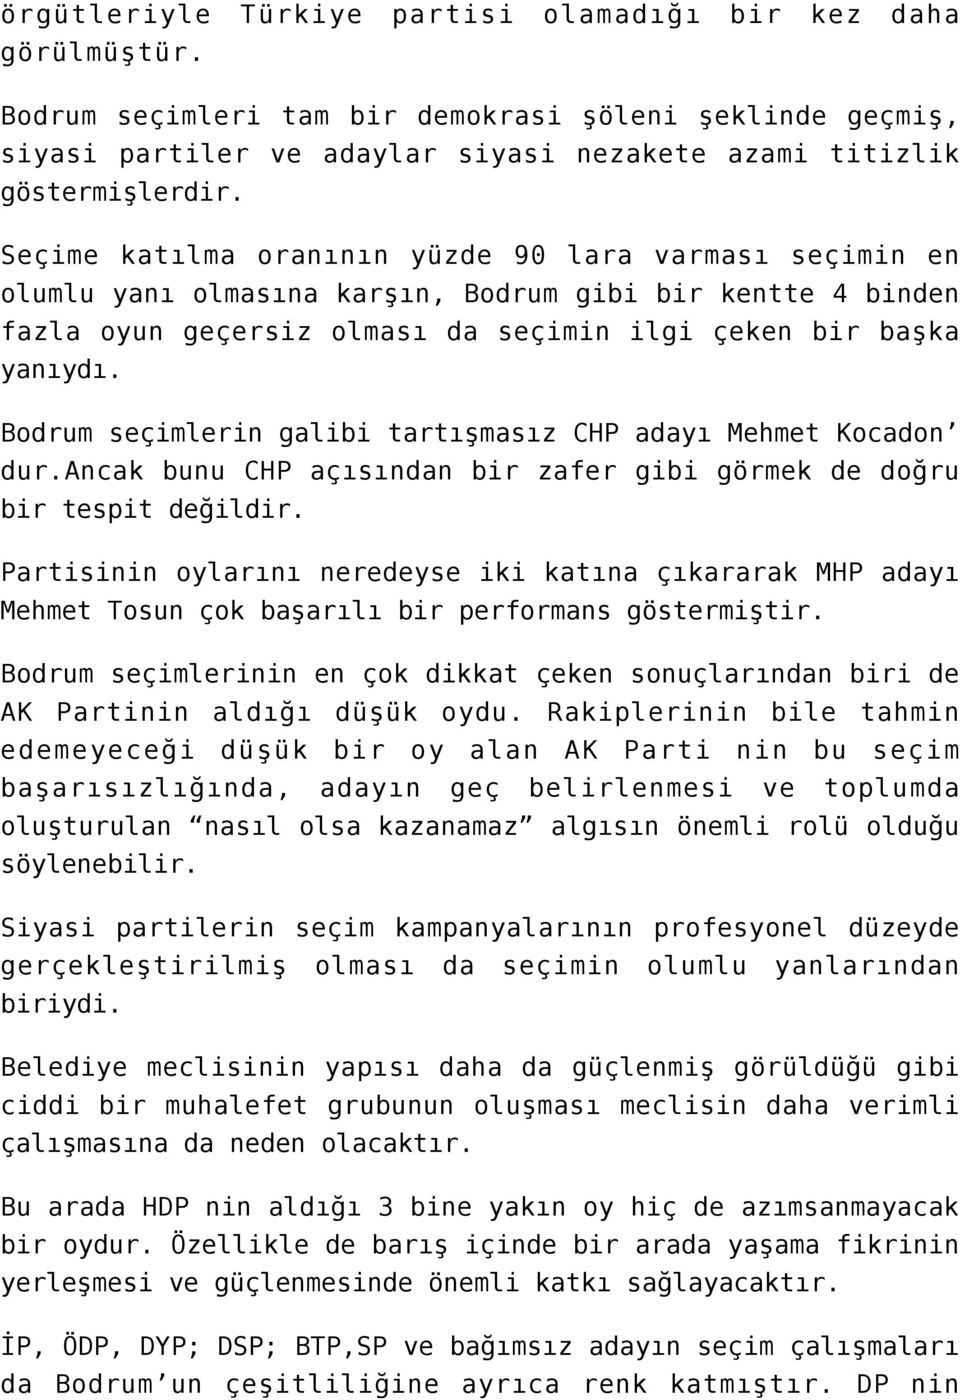 Bodrum seçimlerin galibi tartışmasız CHP adayı Mehmet Kocadon dur.ancak bunu CHP açısından bir zafer gibi görmek de doğru bir tespit değildir.